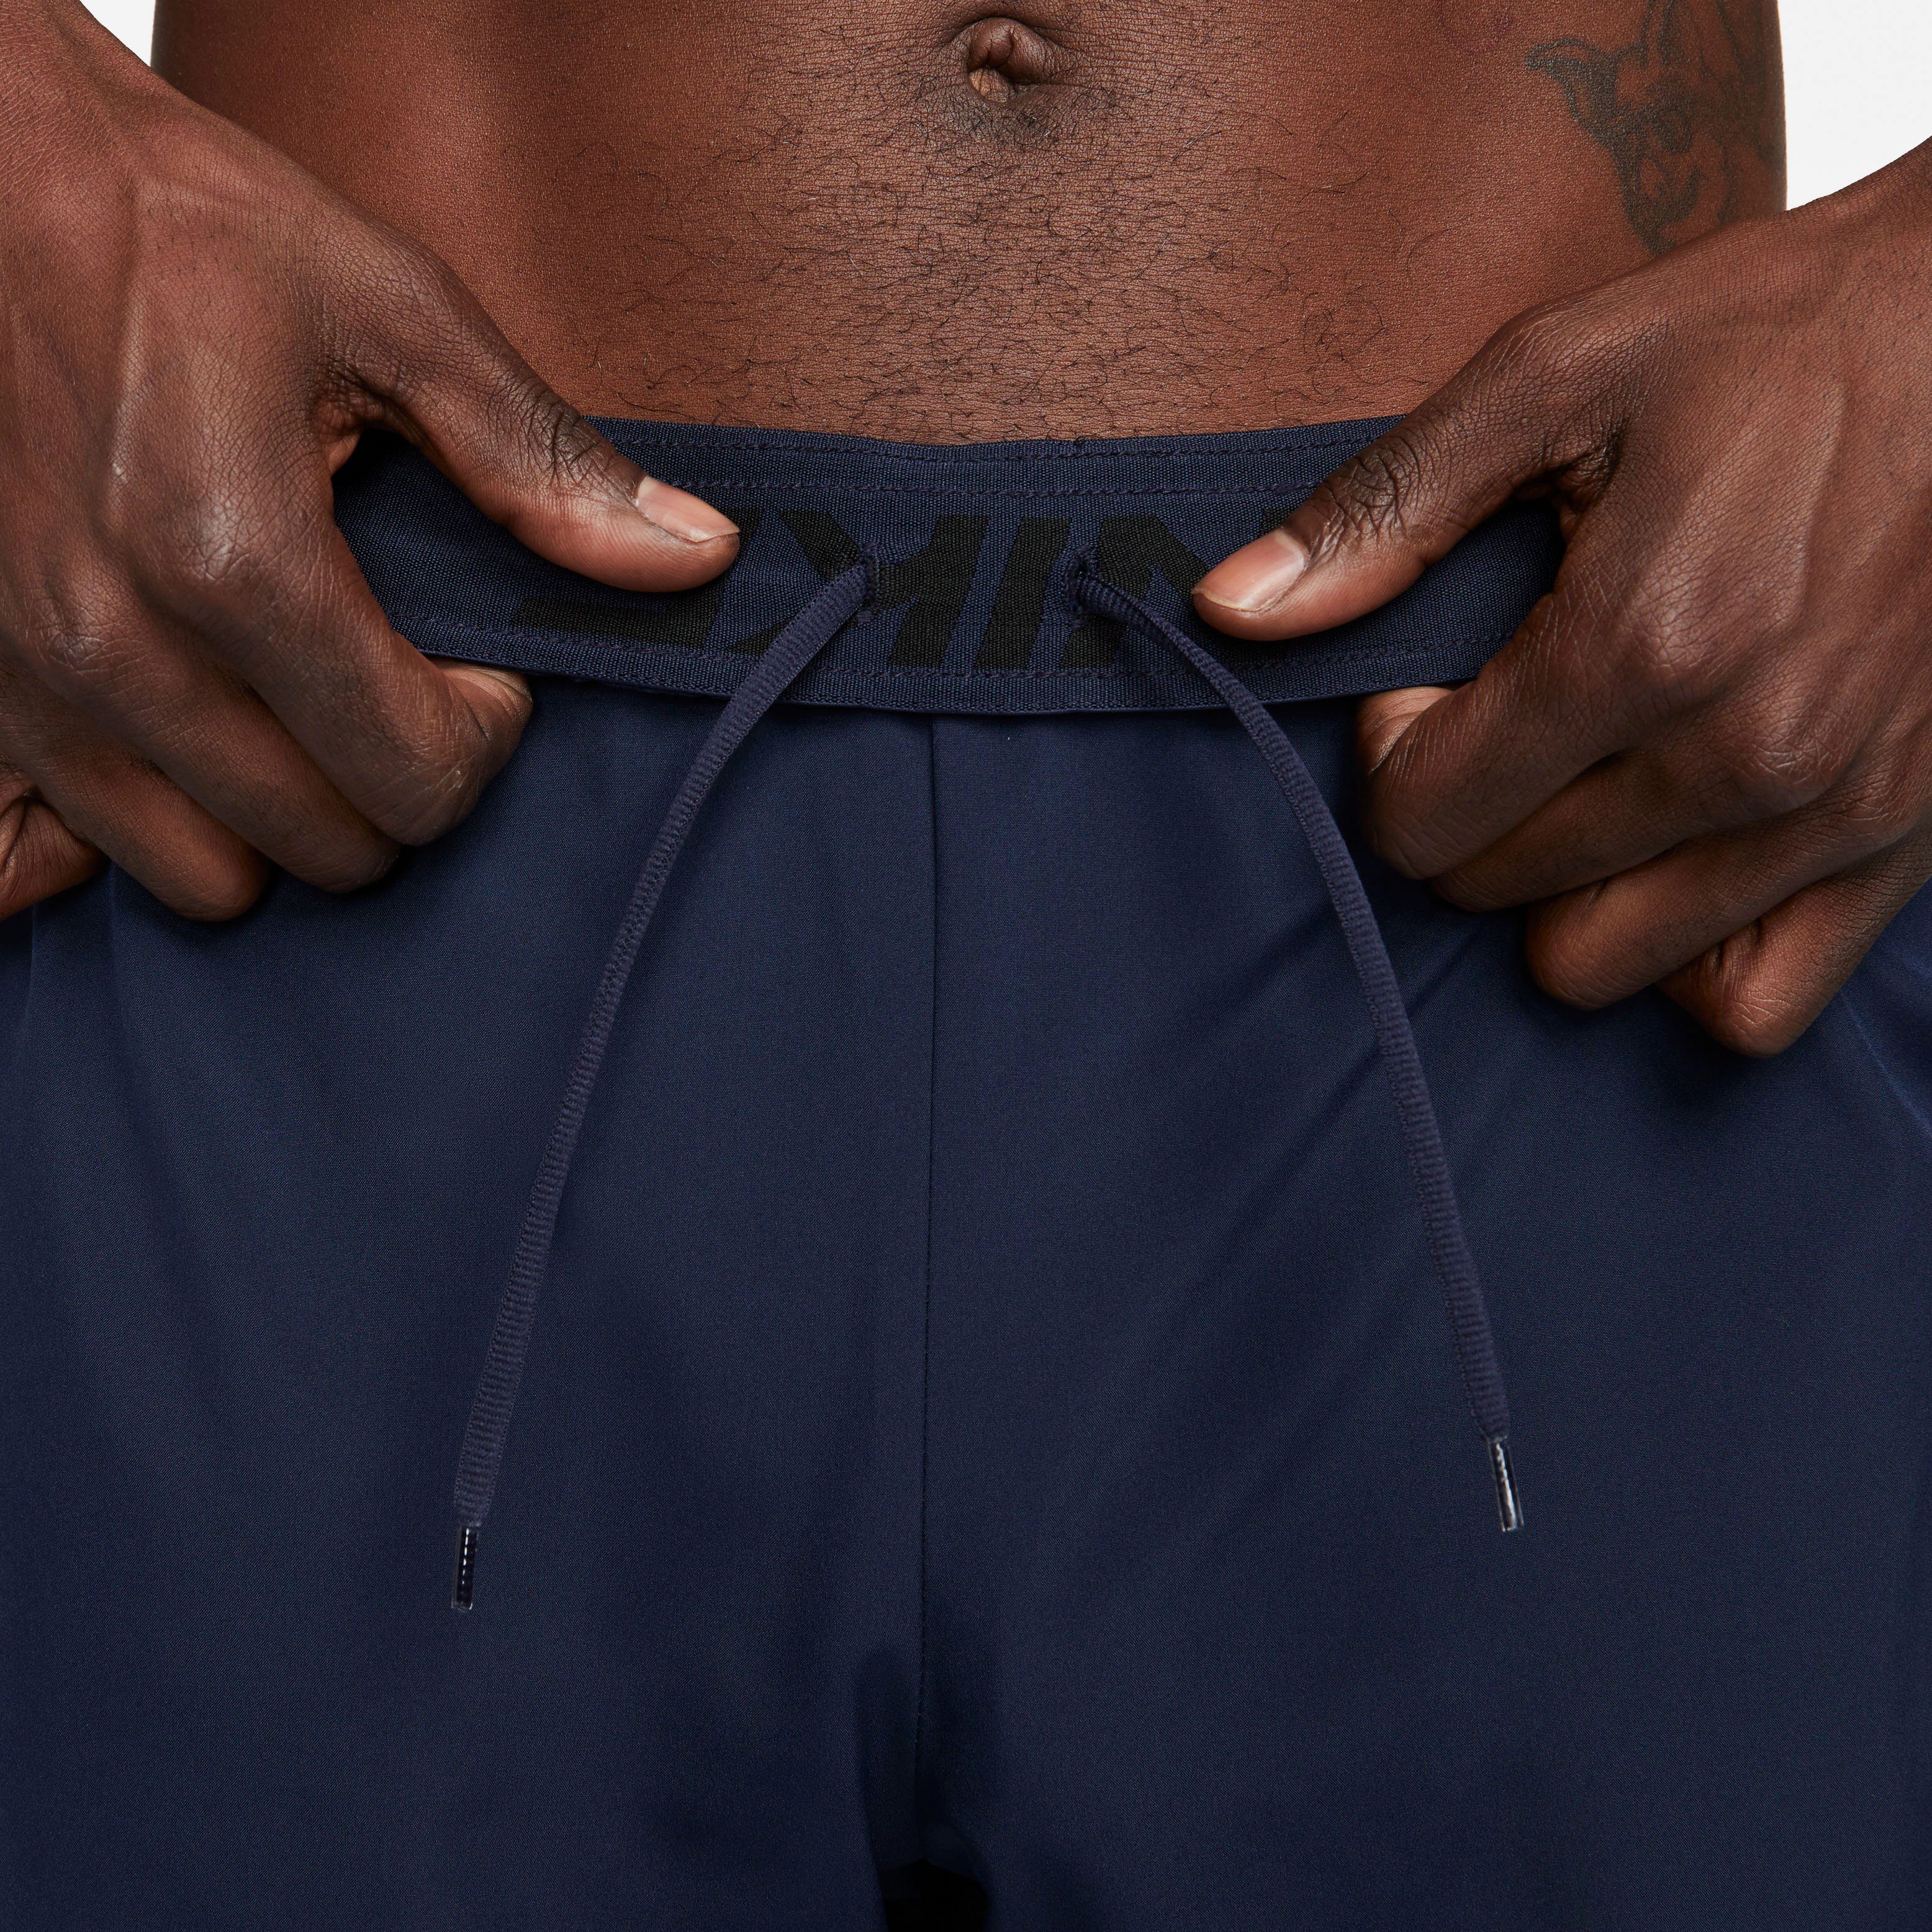 Nike Shorts " Woven Training Men's Shorts Dri-FIT OBSIDIAN/GAME ROYAL/BLACK